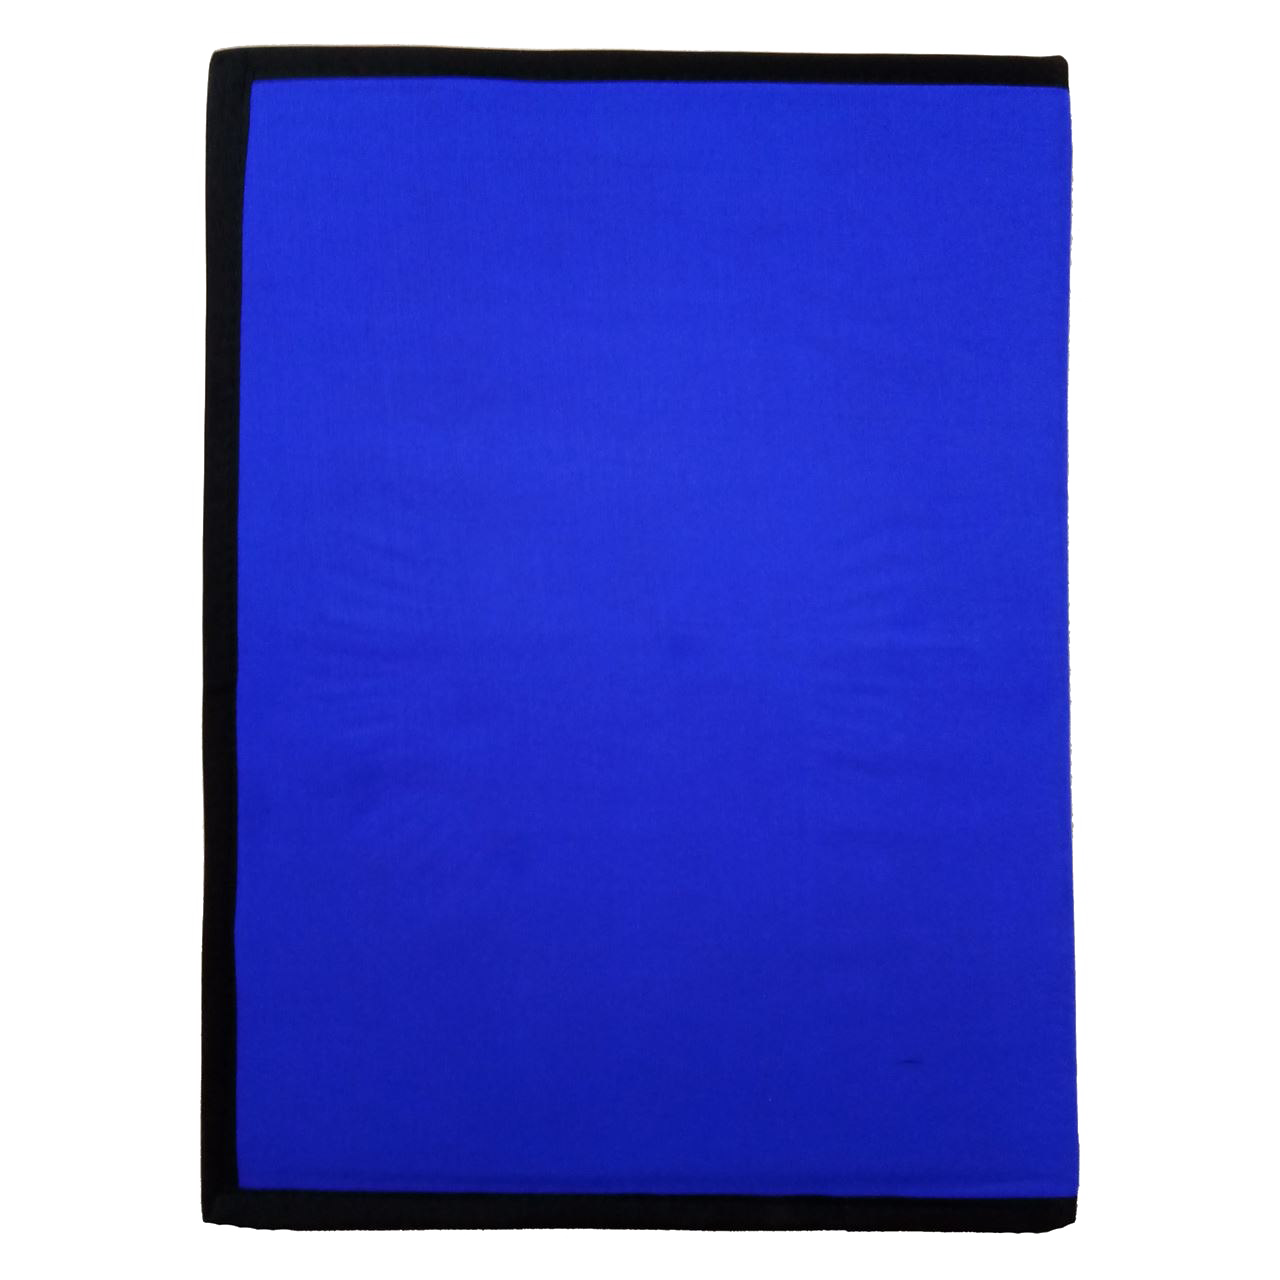 Blue Folder PNG Clipart latar belakang